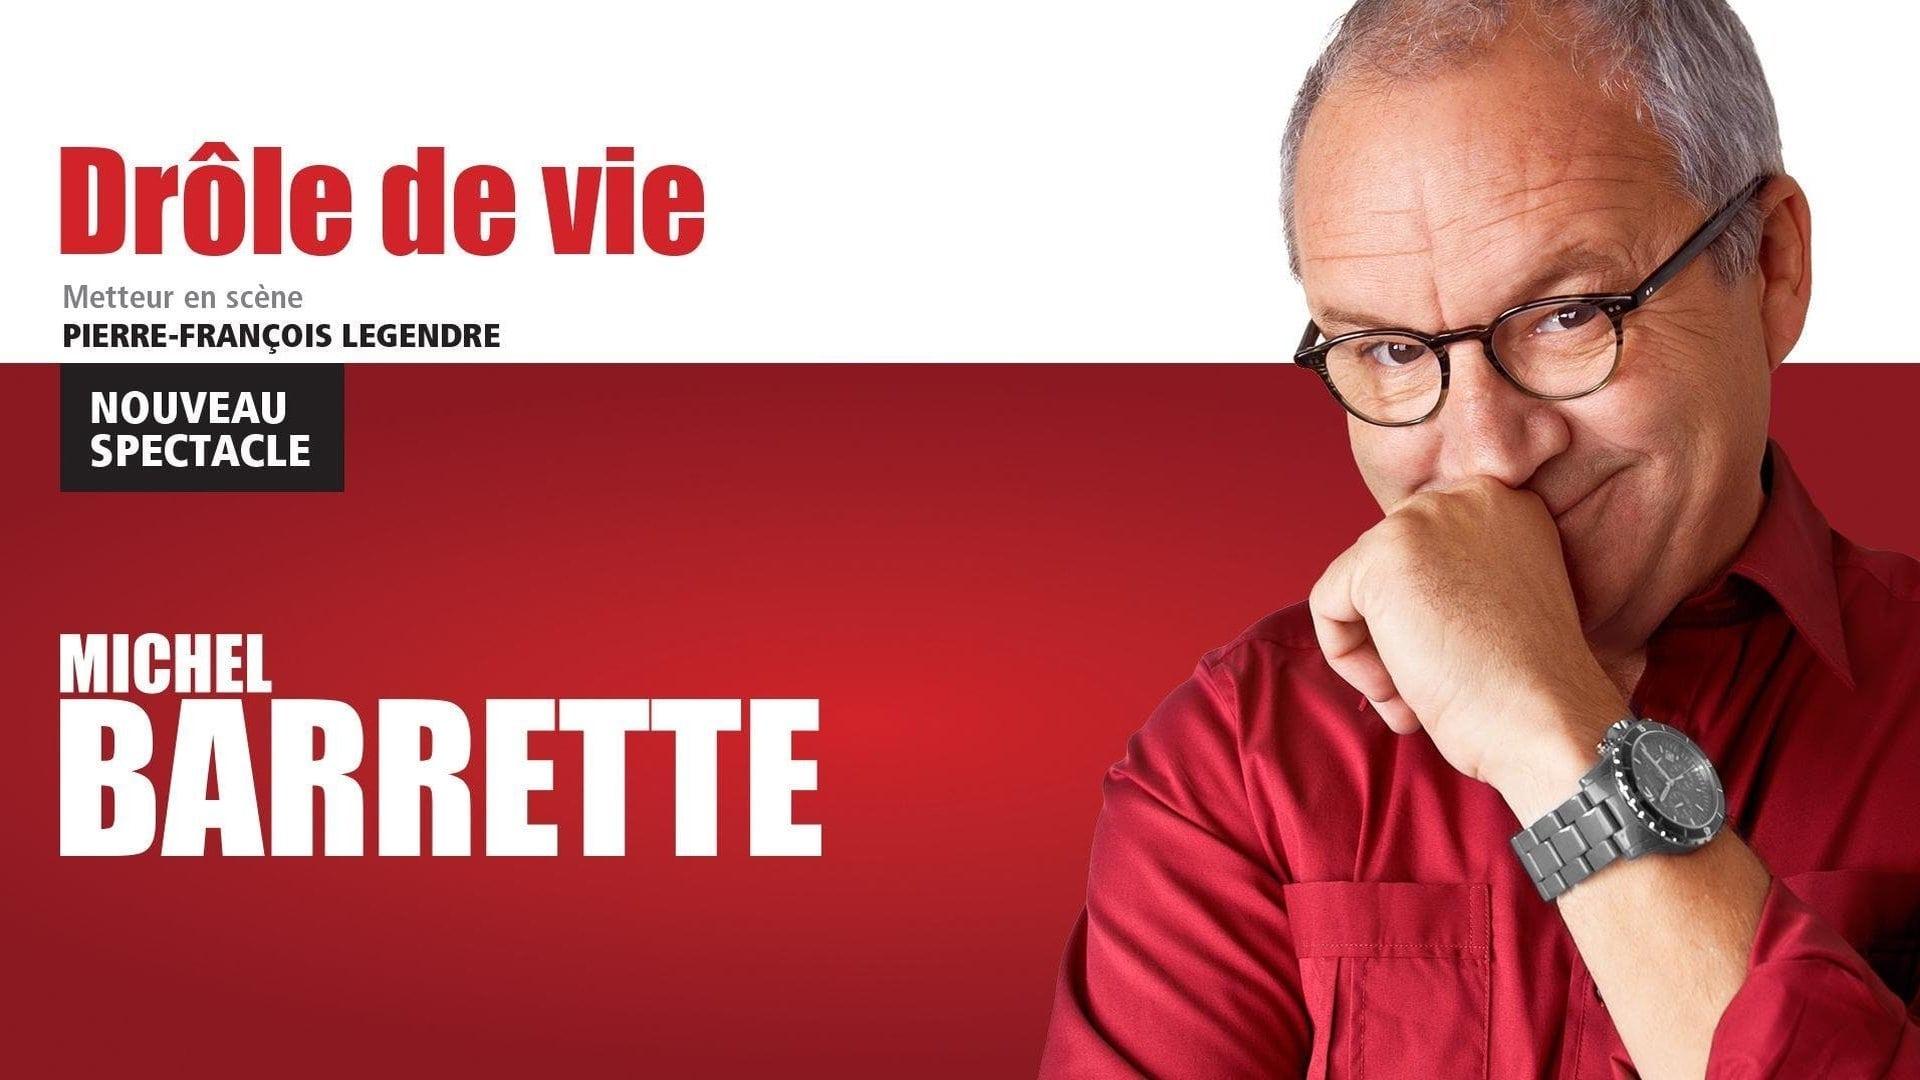 Michel Barrette: Drôle de vie backdrop